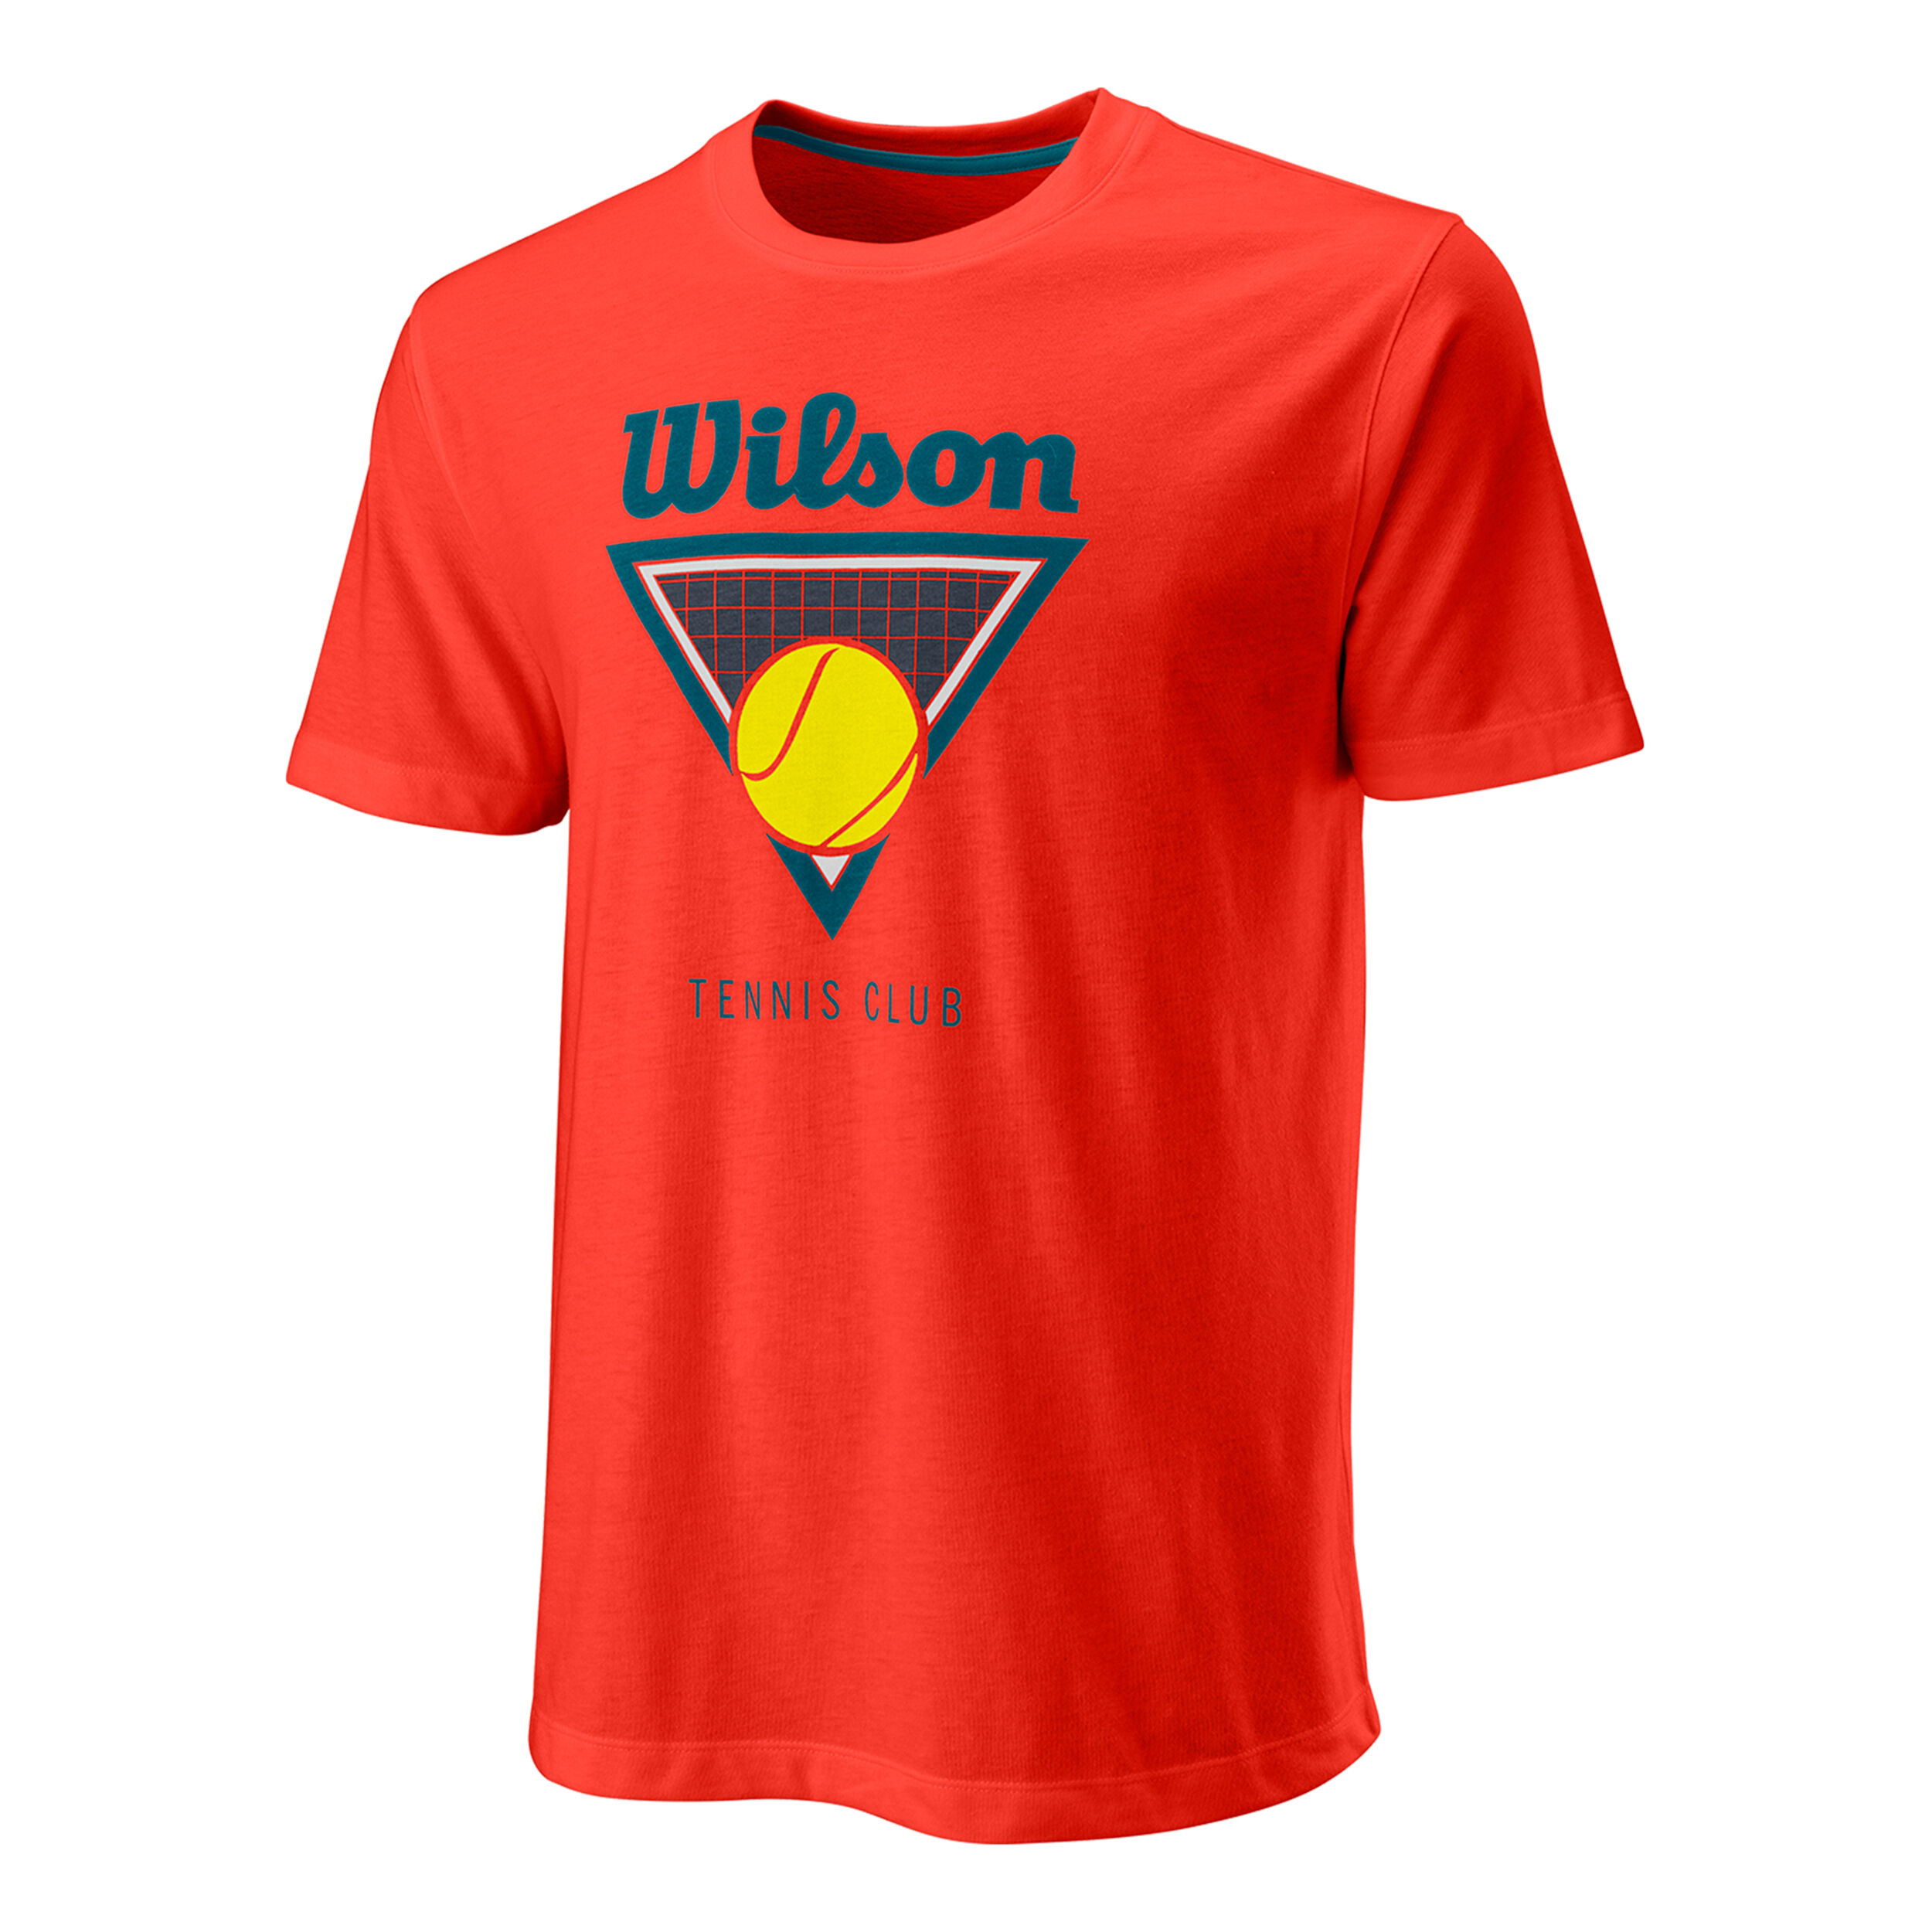 NEU UVP 29,95 € L Wilson Tennis T-Shirt Gr EU 52 